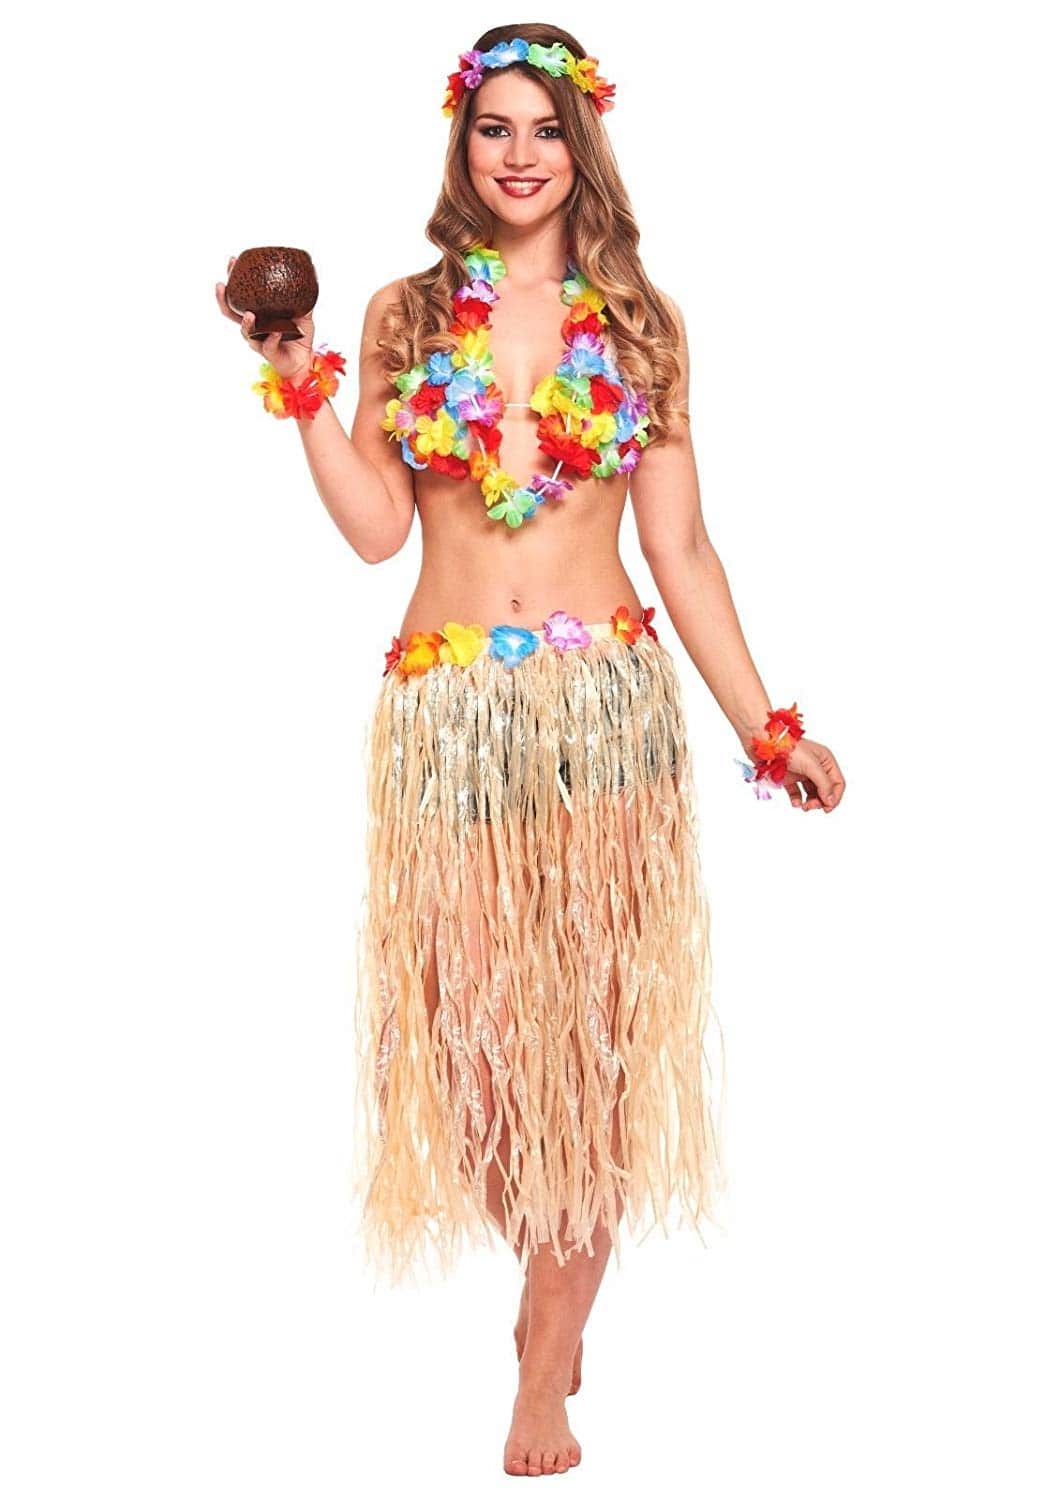 Islas del pacifico gatear Cromático Complementos Fiesta Hawaiana disfraces falda hula diadema flores pulsera